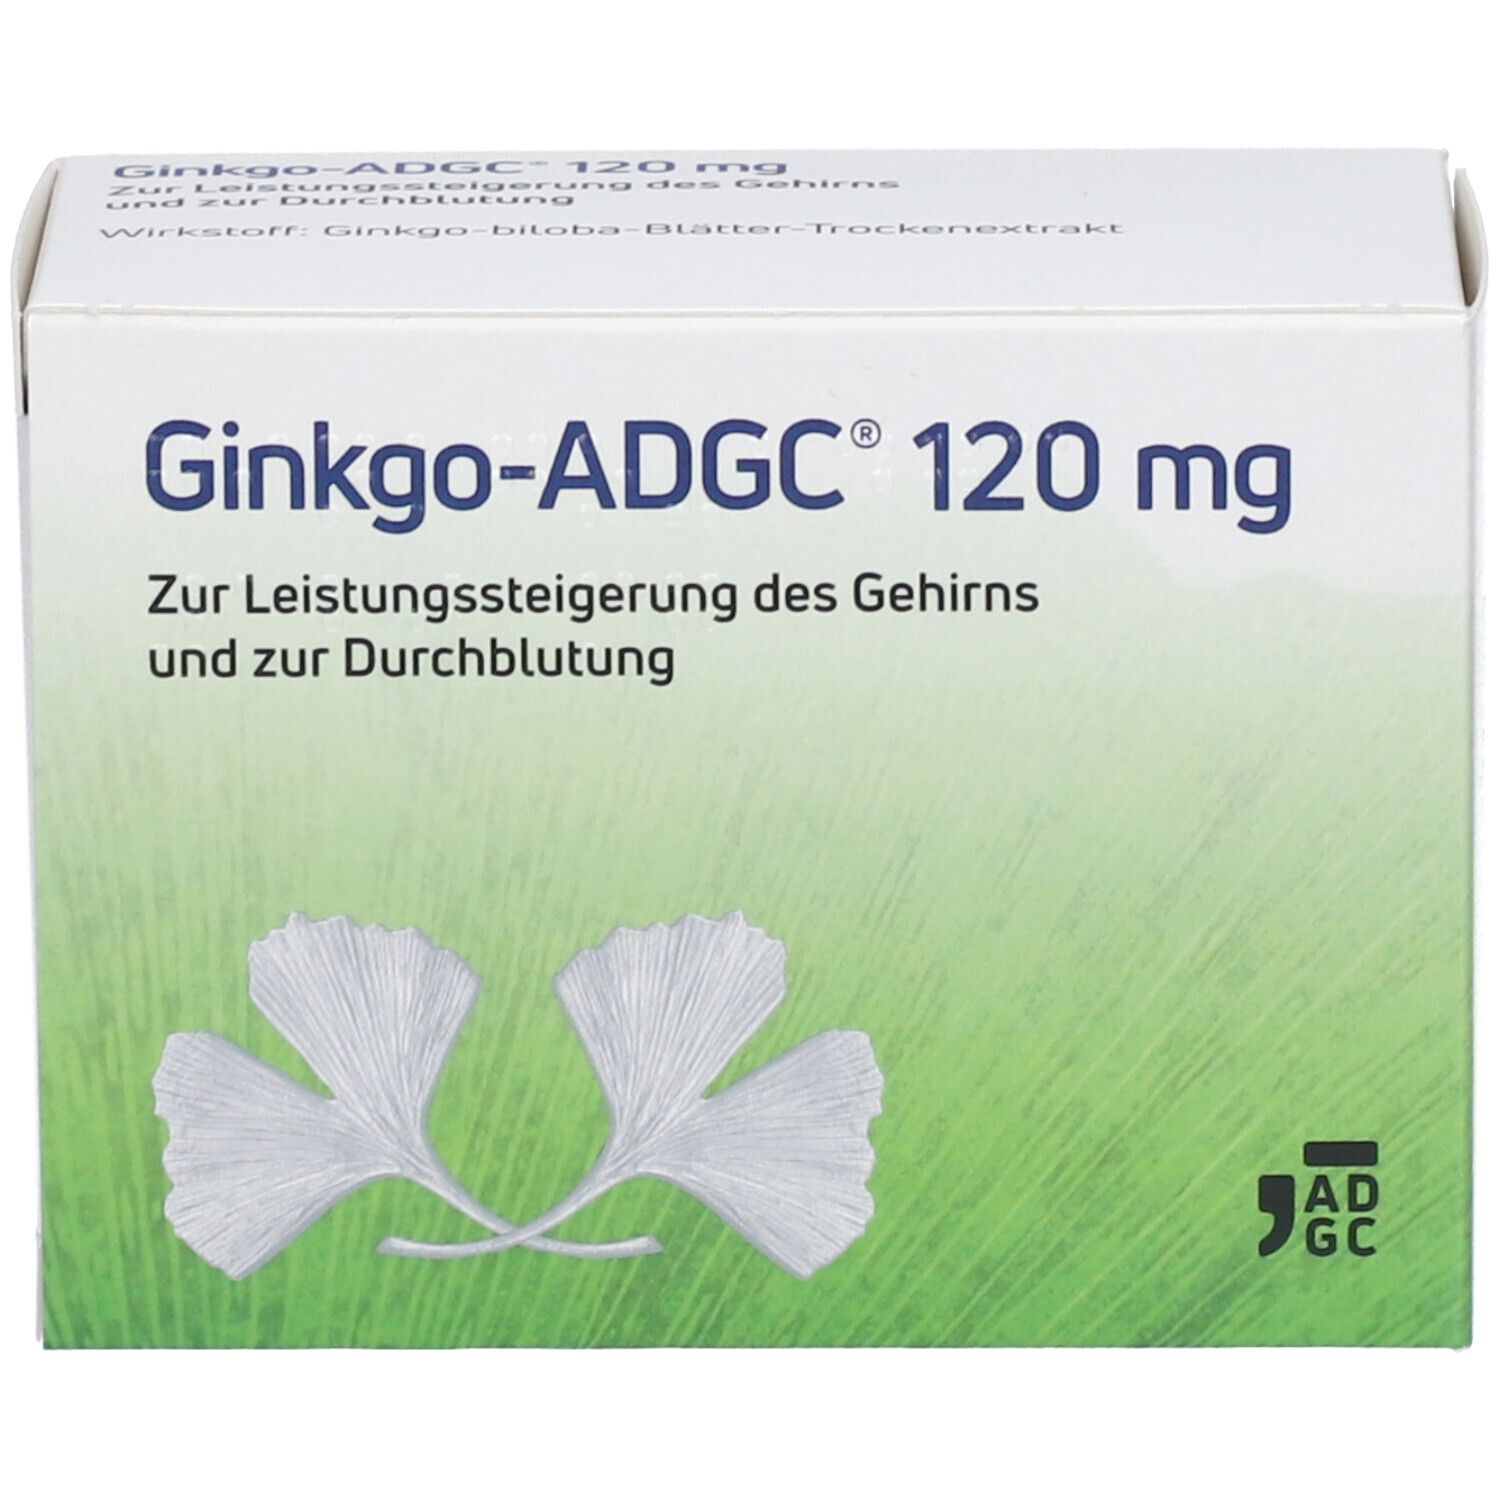 Ginkgo-ADGC® 120 mg